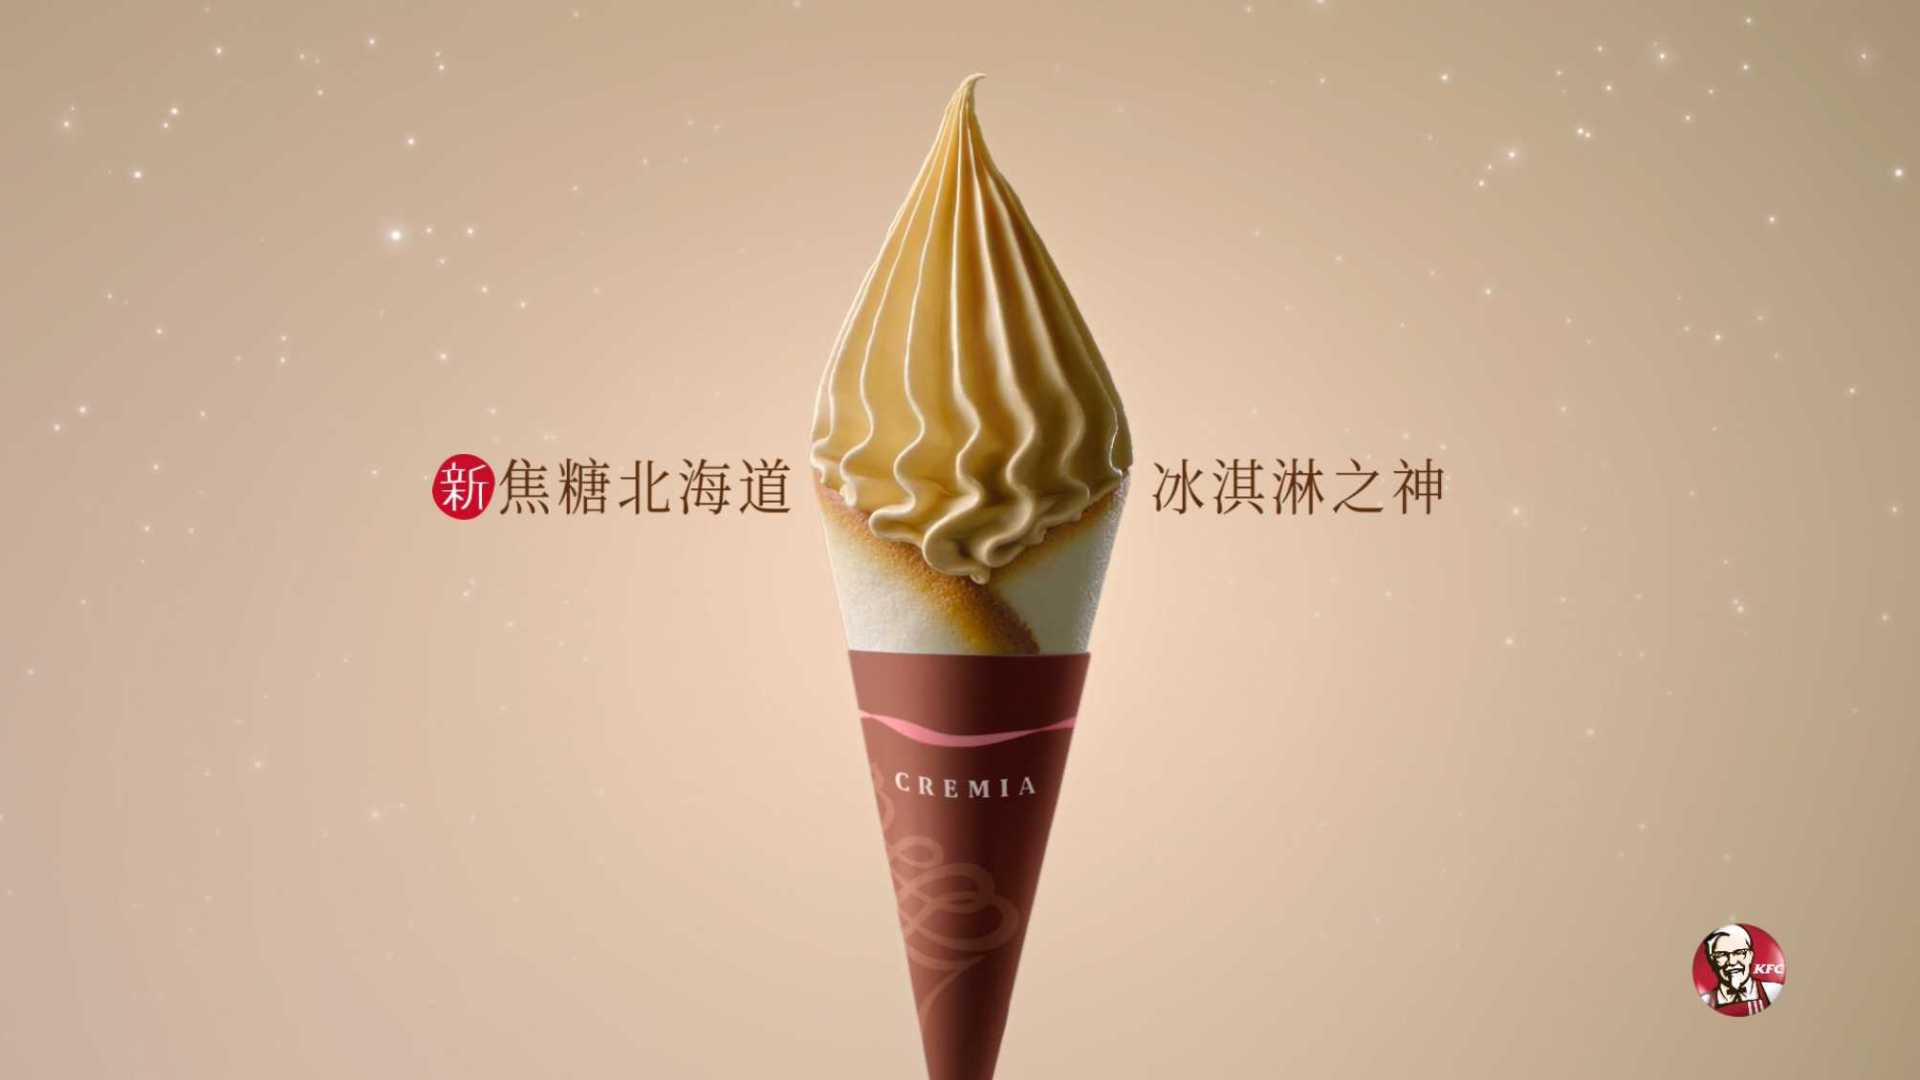 2020 KFC 北海道冰淇淋 焦糖篇